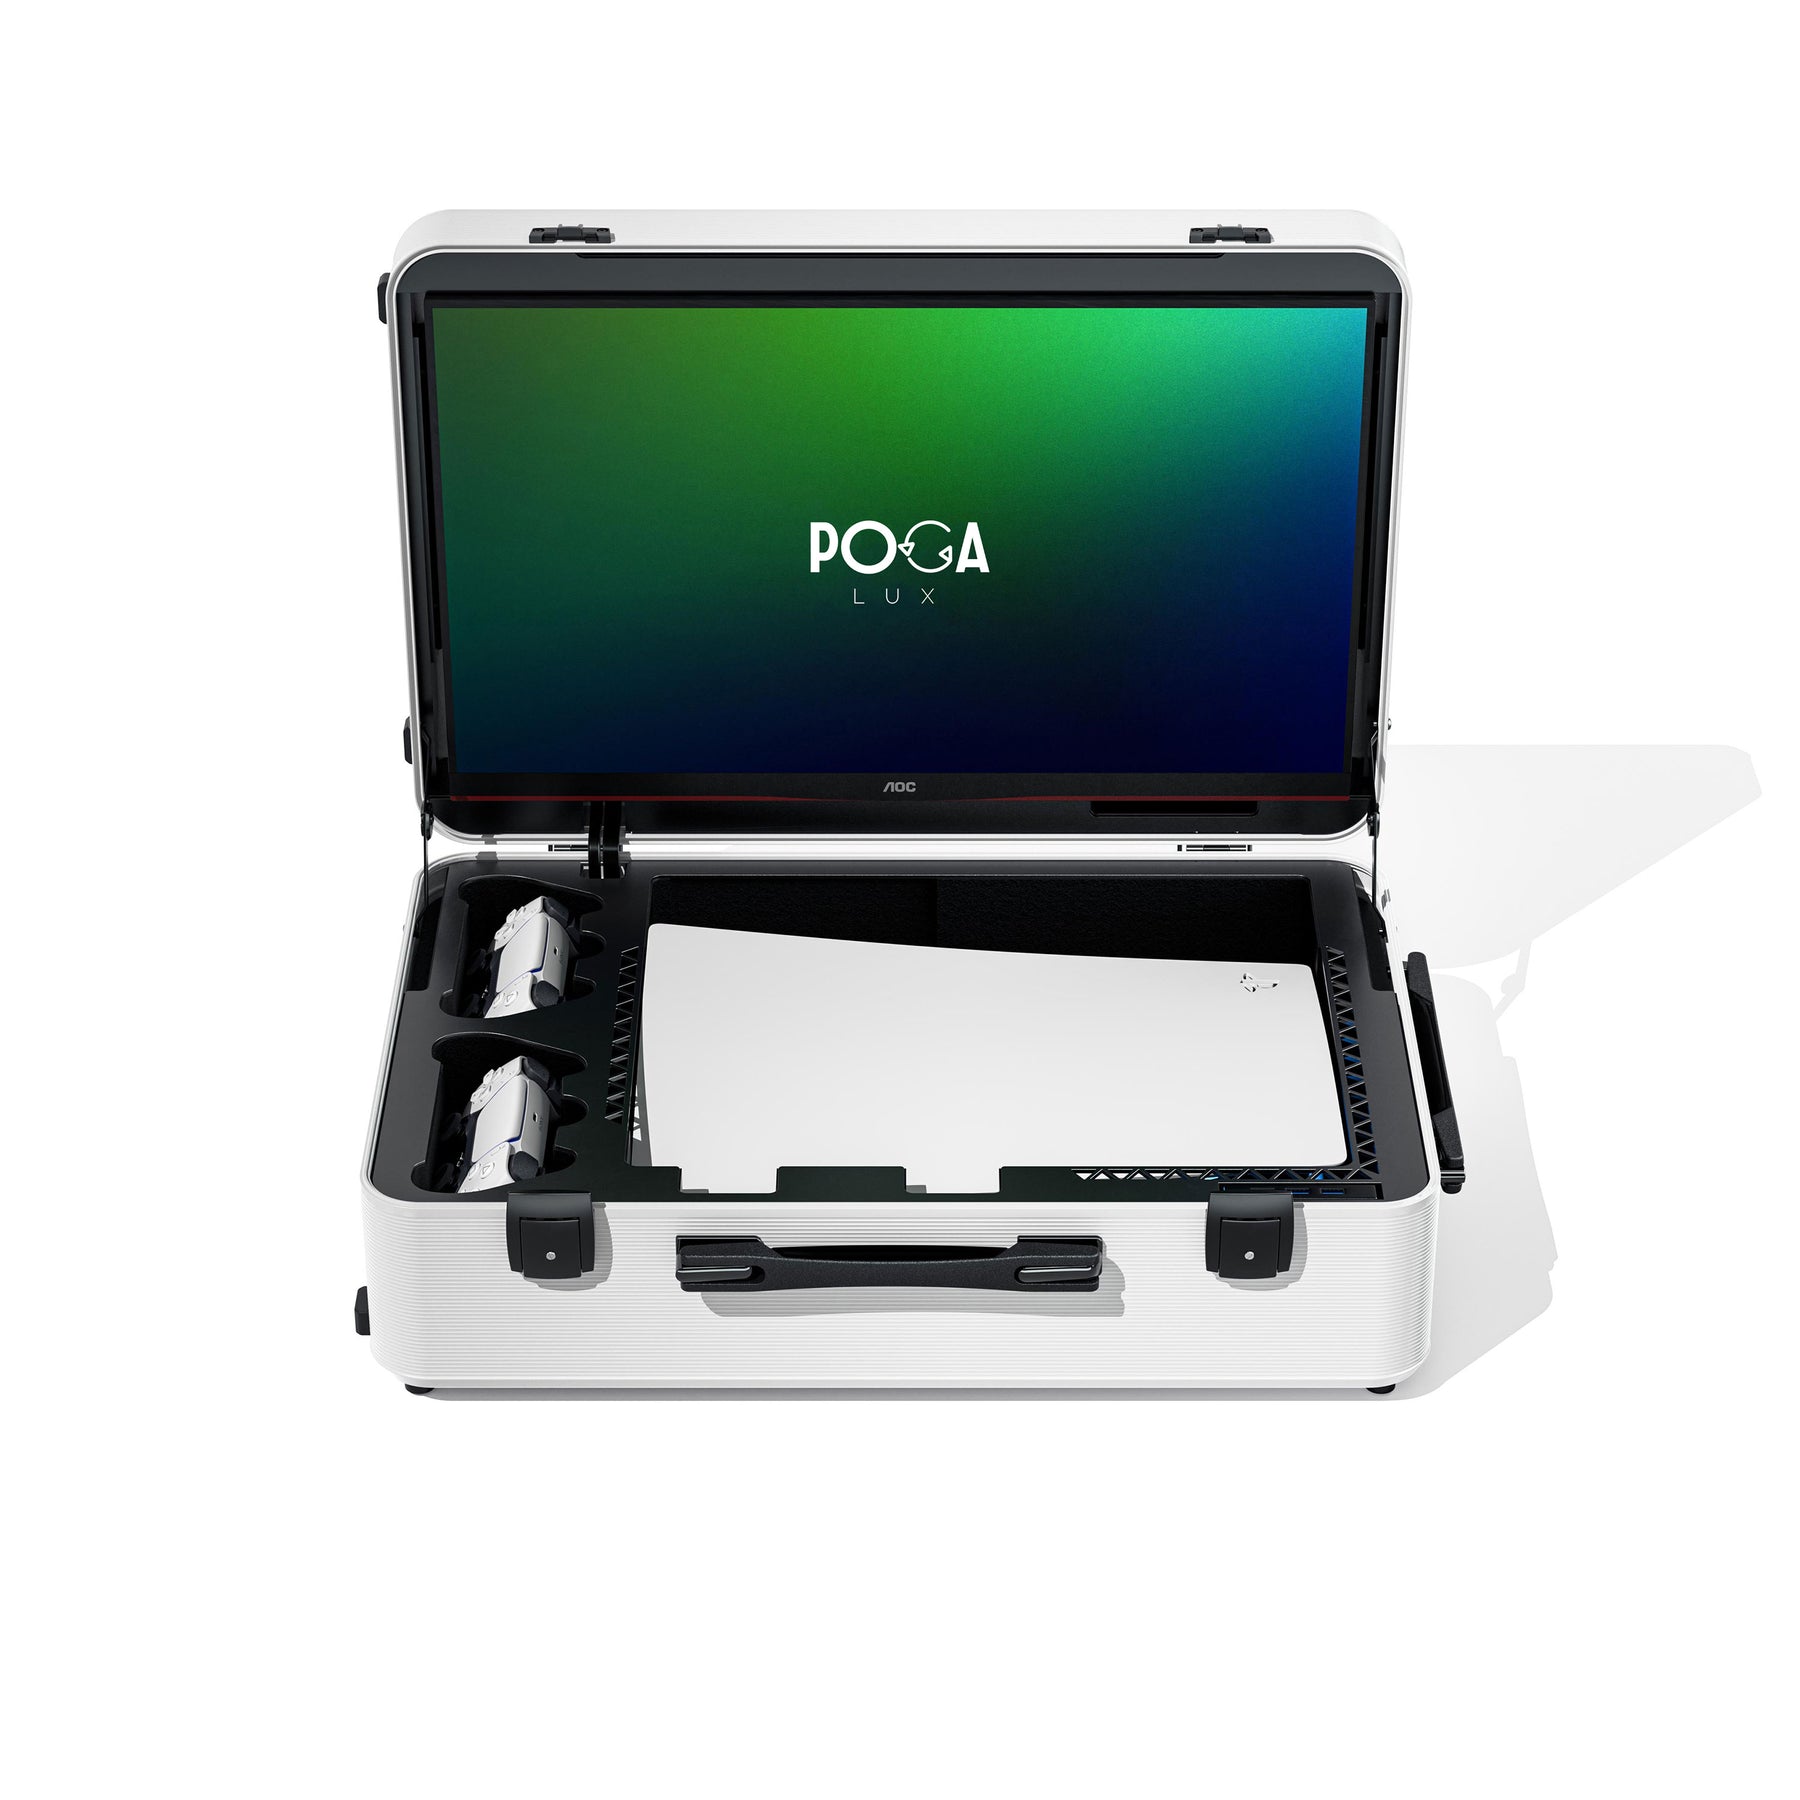 POGA Lux incl. PS5 Slim Console